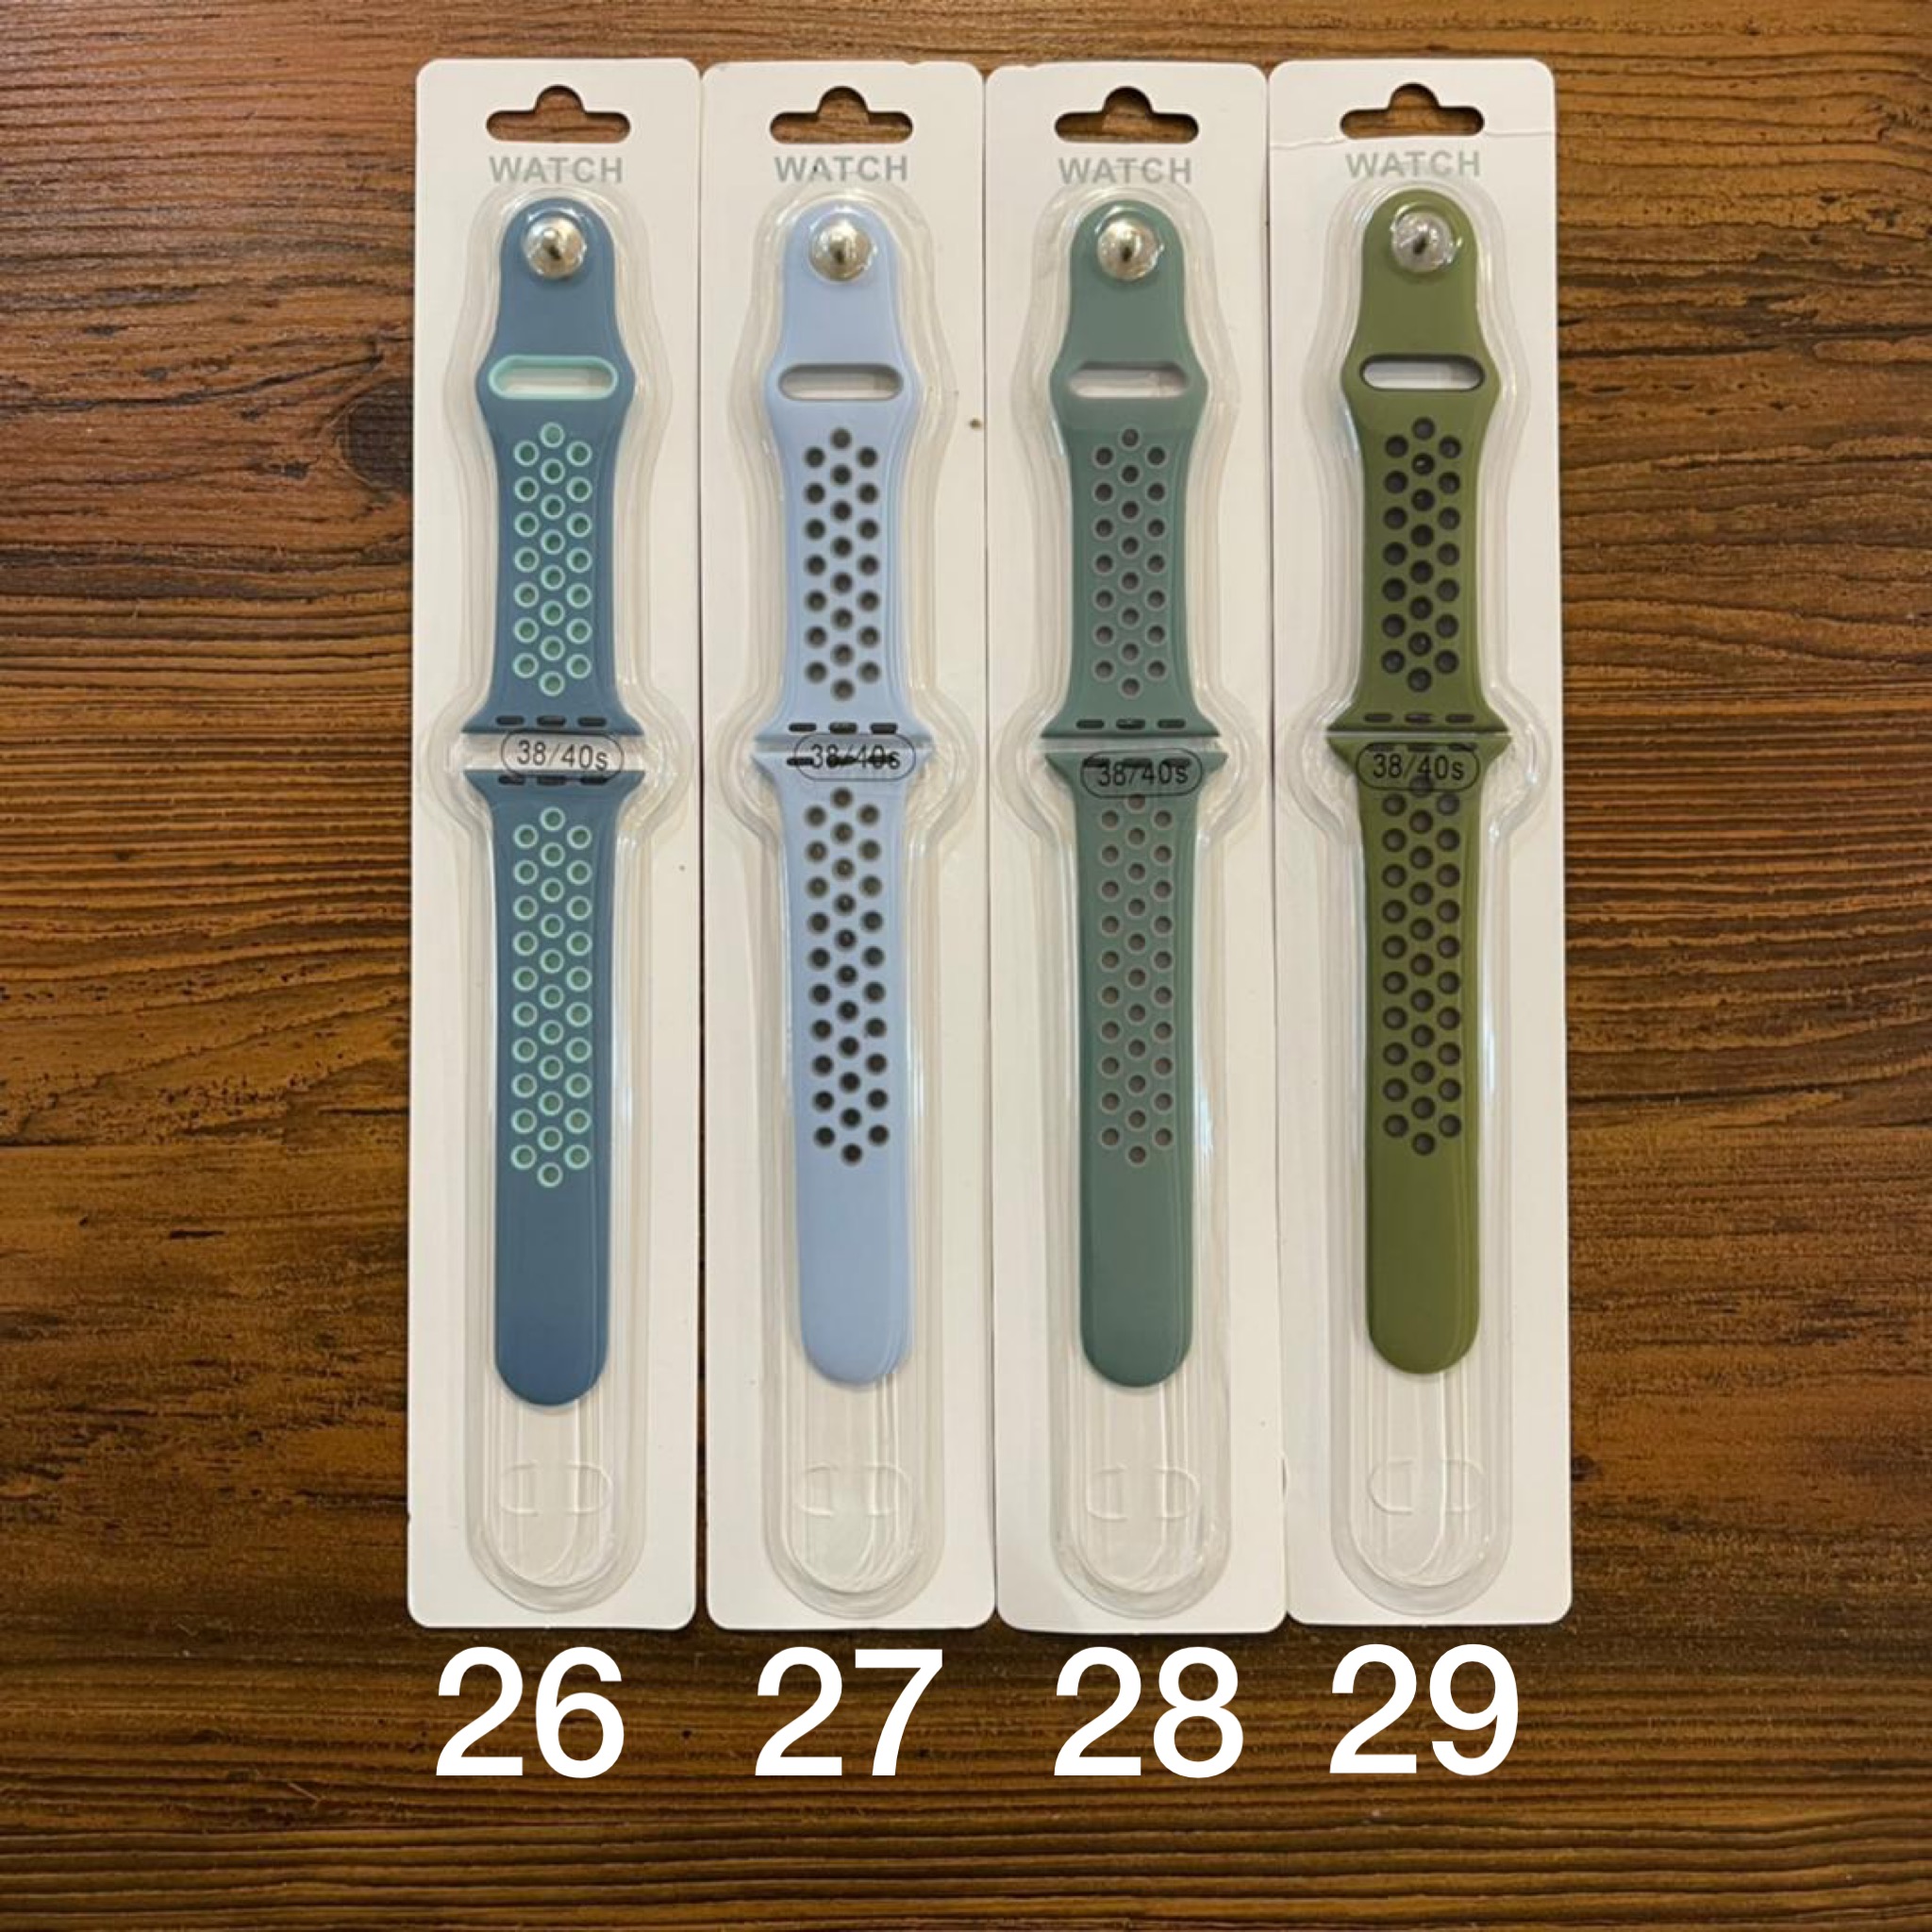 بند سیلیکونی نایکی اپل واچ Apple watch nike band 38-40 Small size